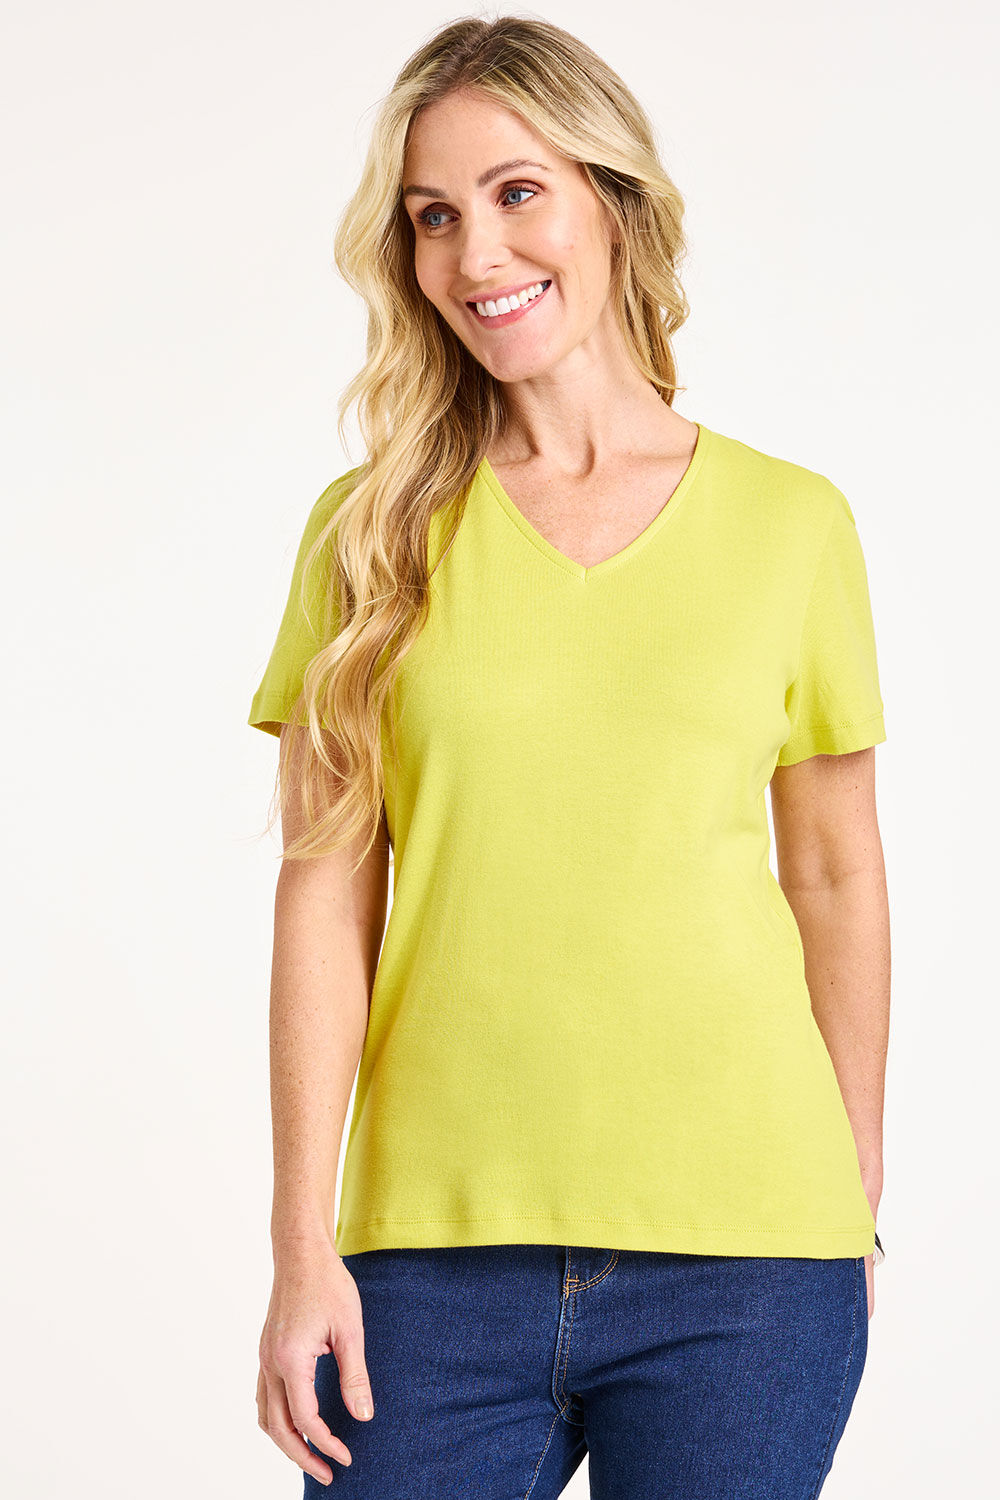 Bonmarche Women’s Yellow Cotton Classic Short Sleeve Plain V-Neck T-Shirt, Size: 12